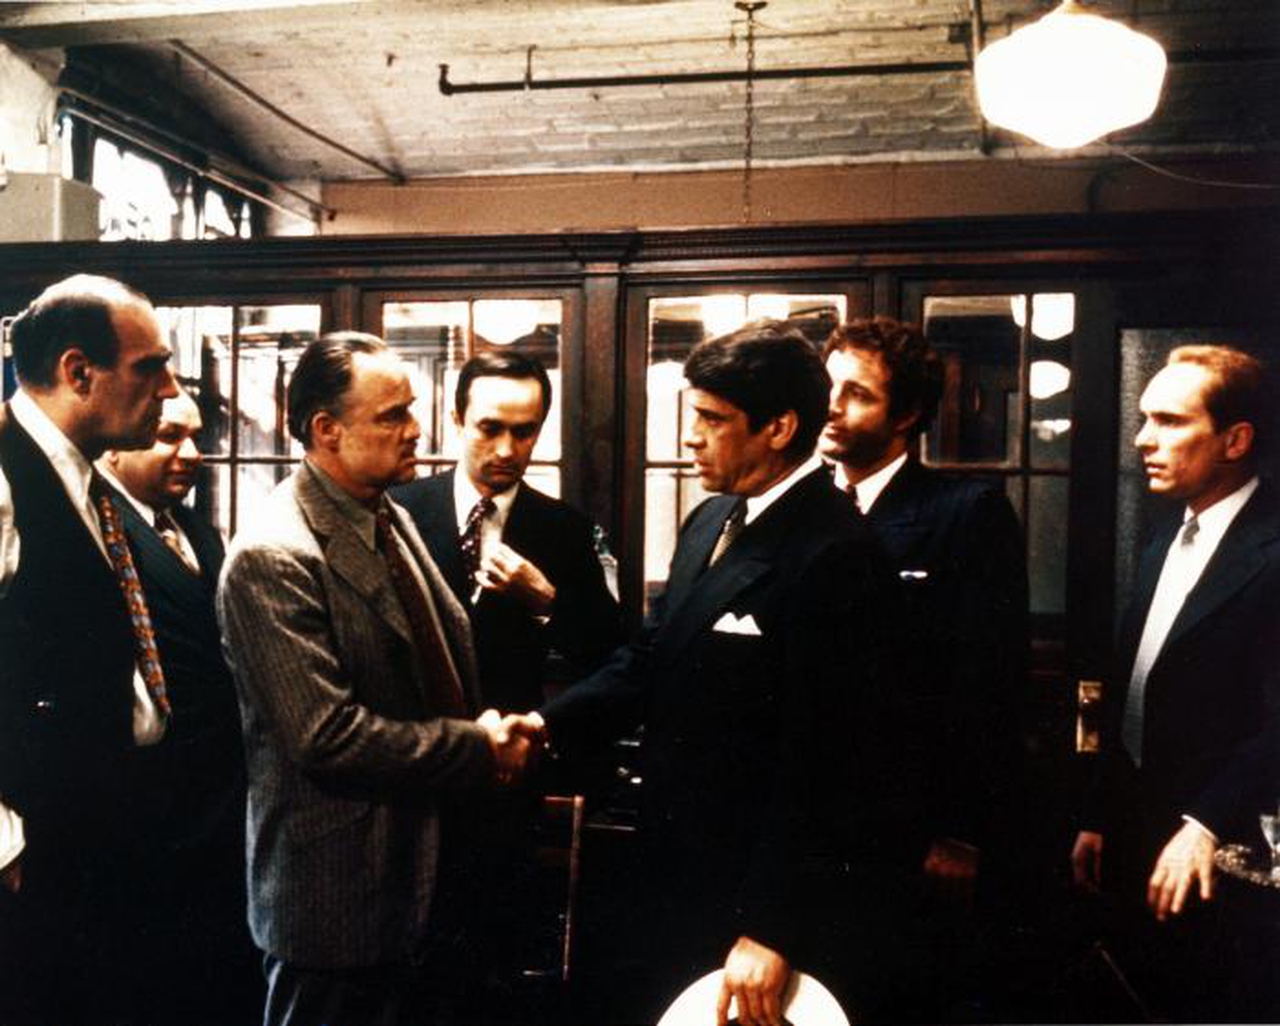 ریچارد اس. کاستلانو در صحنه فیلم سینمایی پدرخوانده به همراه مارلون براندو، جیمز کان، رابرت دووال، آل لتیری، ایب ویگودا و جان کازال